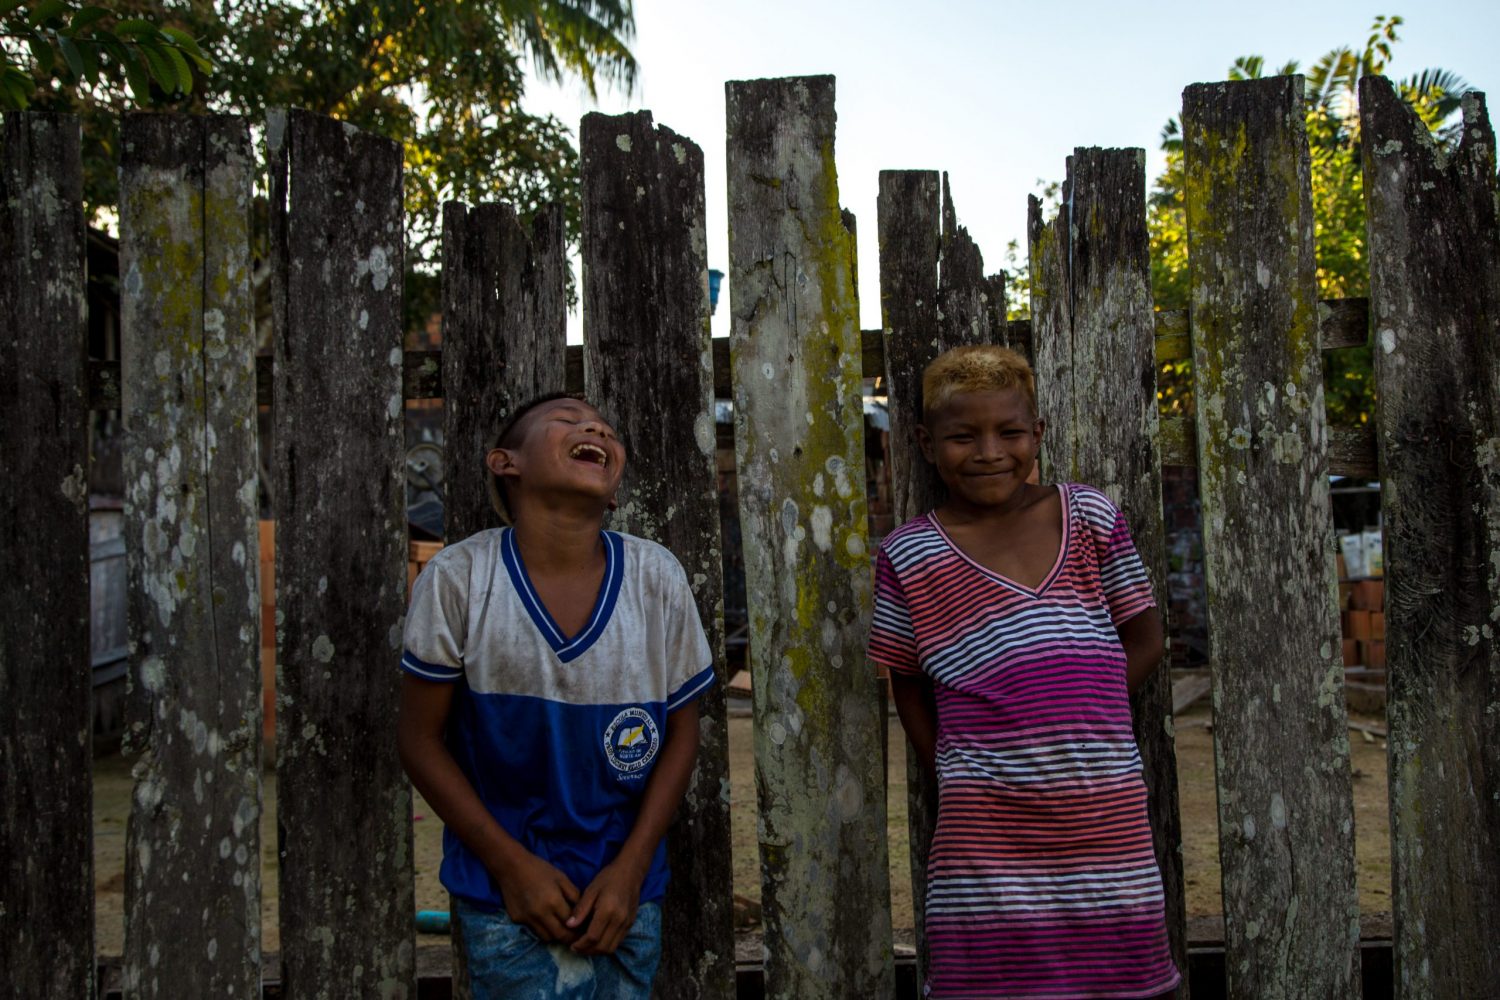 Crianças brincam na cerca de uma das casas de Atalaia do Norte. Foto Pedro Prado/Abraji